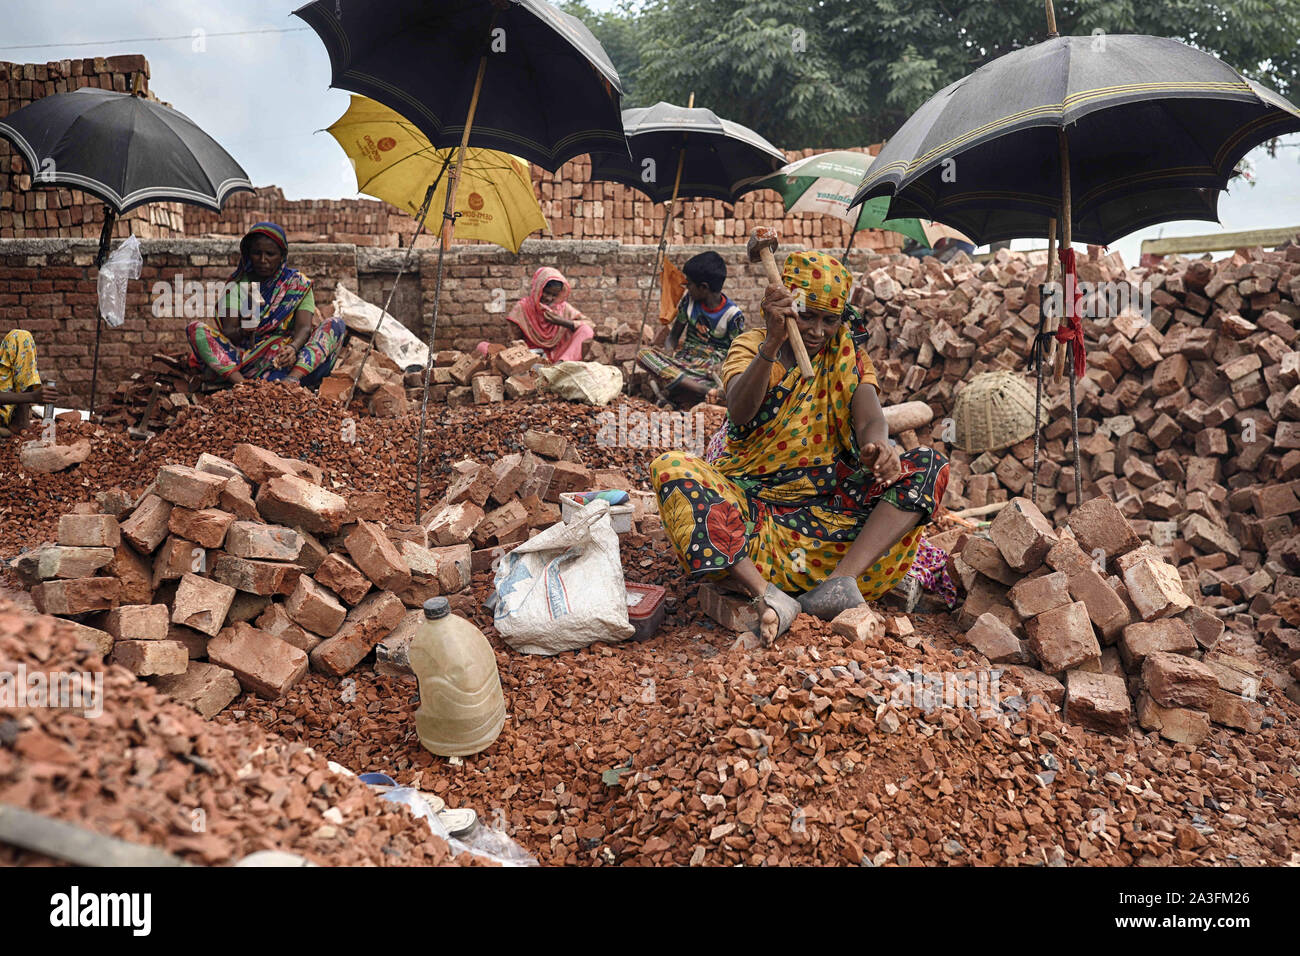 Dhaka, Bangladesh. 8th Oct, 2019. Children and women are working in a brick crushing factory in Dhaka Bangladesh Credit: Kazi Salahuddin/ZUMA Wire/Alamy Live News Stock Photo